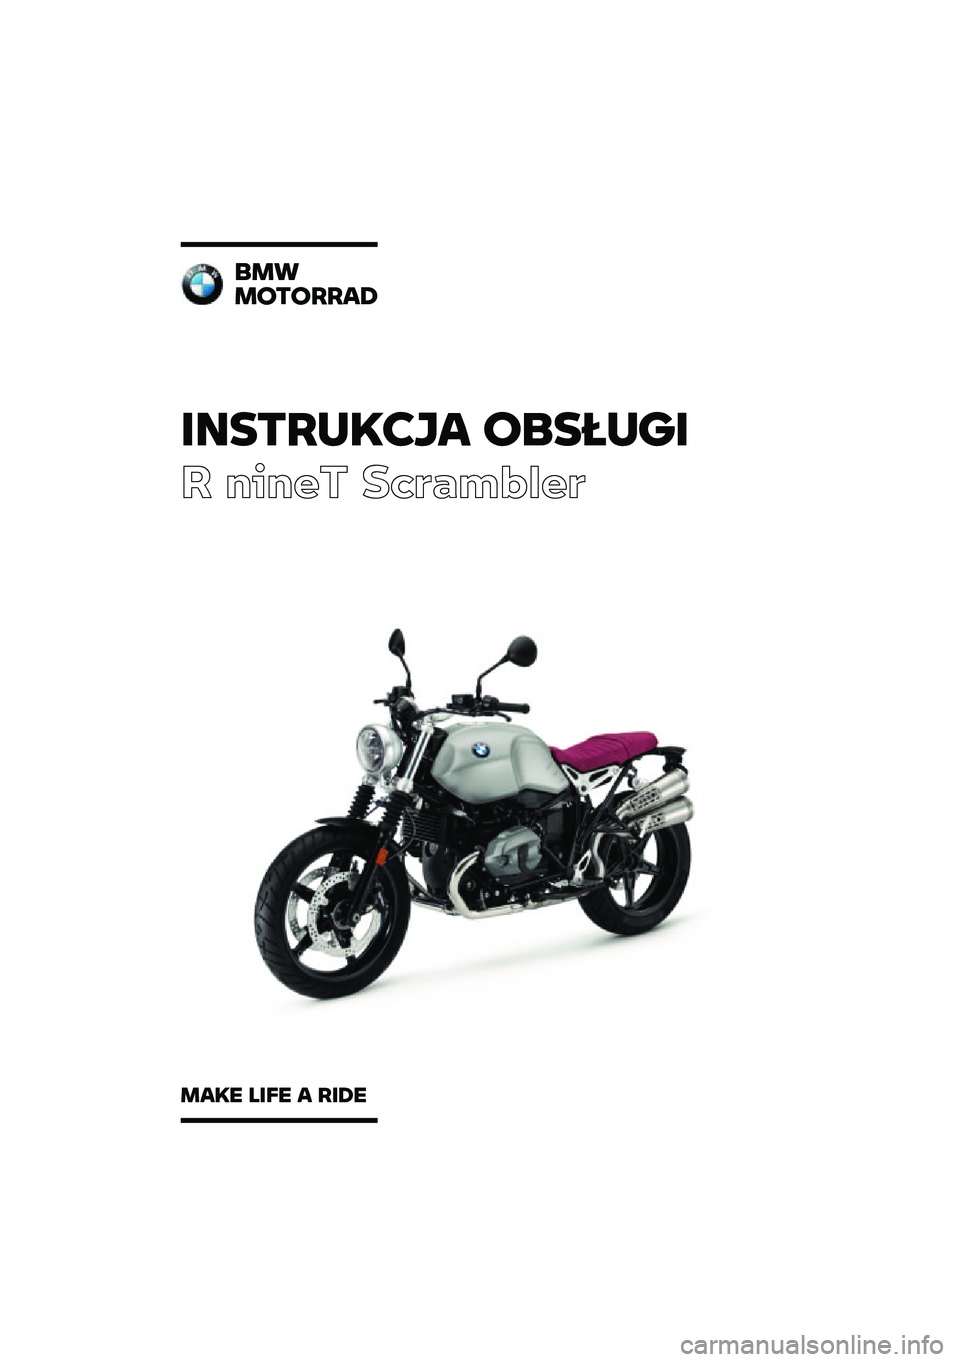 BMW MOTORRAD R NINE T SCRAMBLER 2020  Instrukcja obsługi (in Polish) �������\b�	�
� �\f�
�����
� ����� ��\b�	�
��\f�
��	
�
��
��\f��\f����
���\b� ���� � ���� 